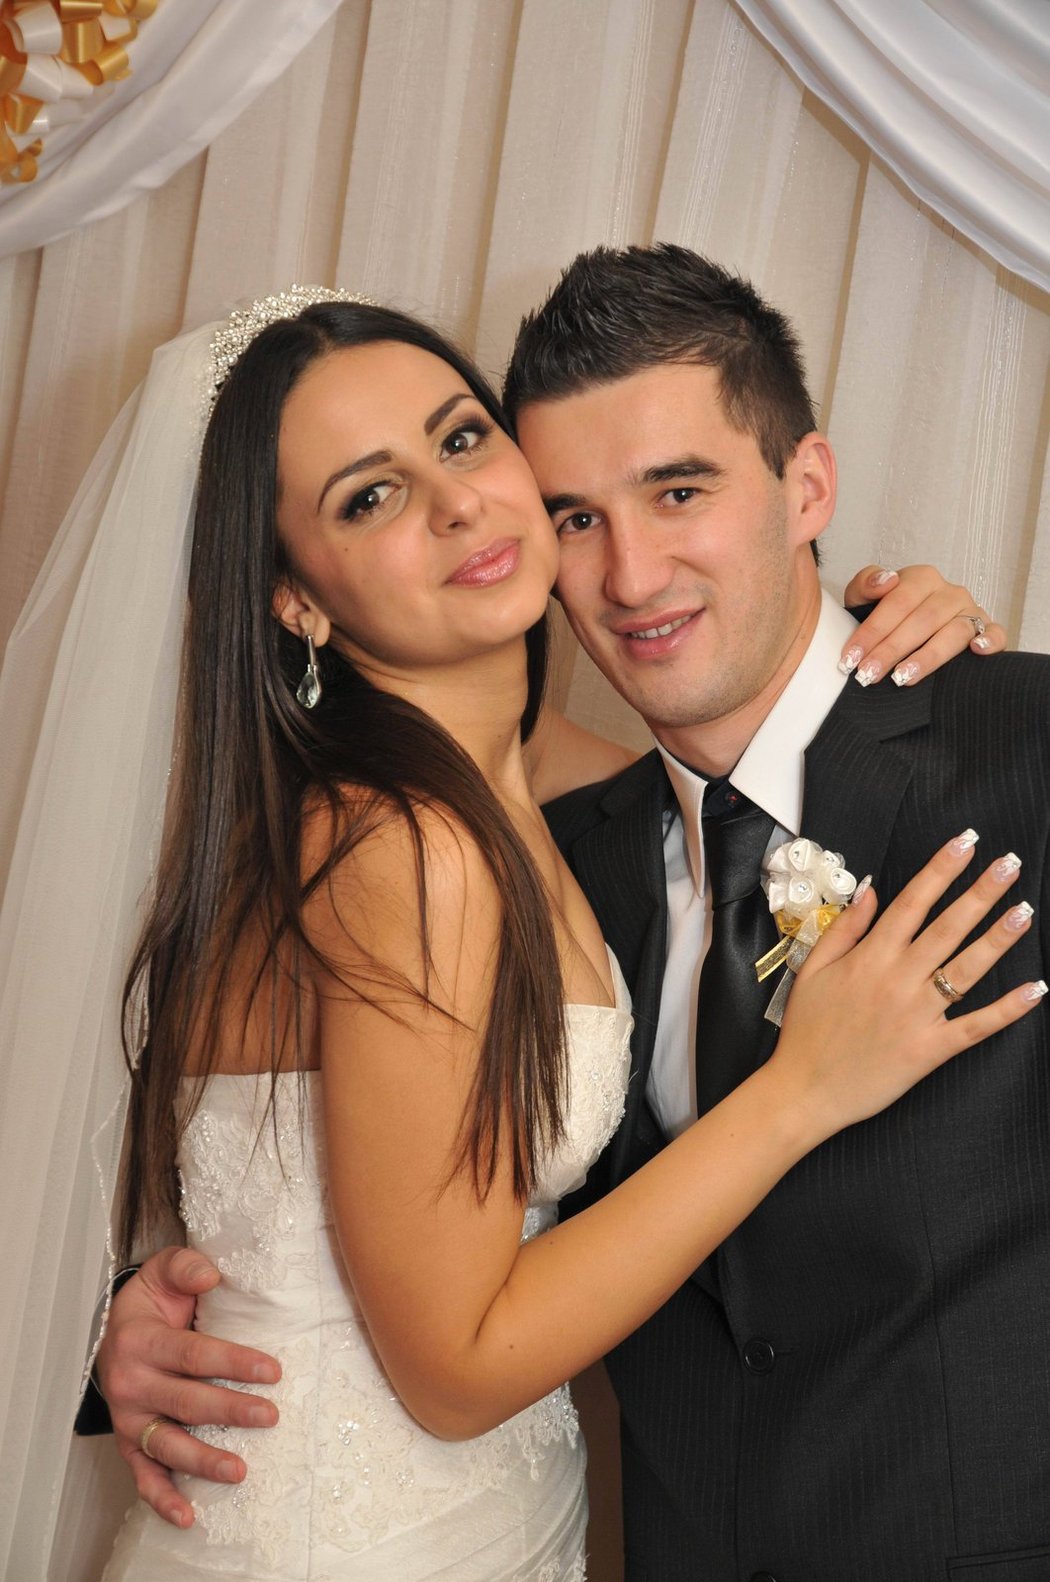 Teplický fotbalista Aidin Mahmutovič se oženil, vzal si krásnou Eminu